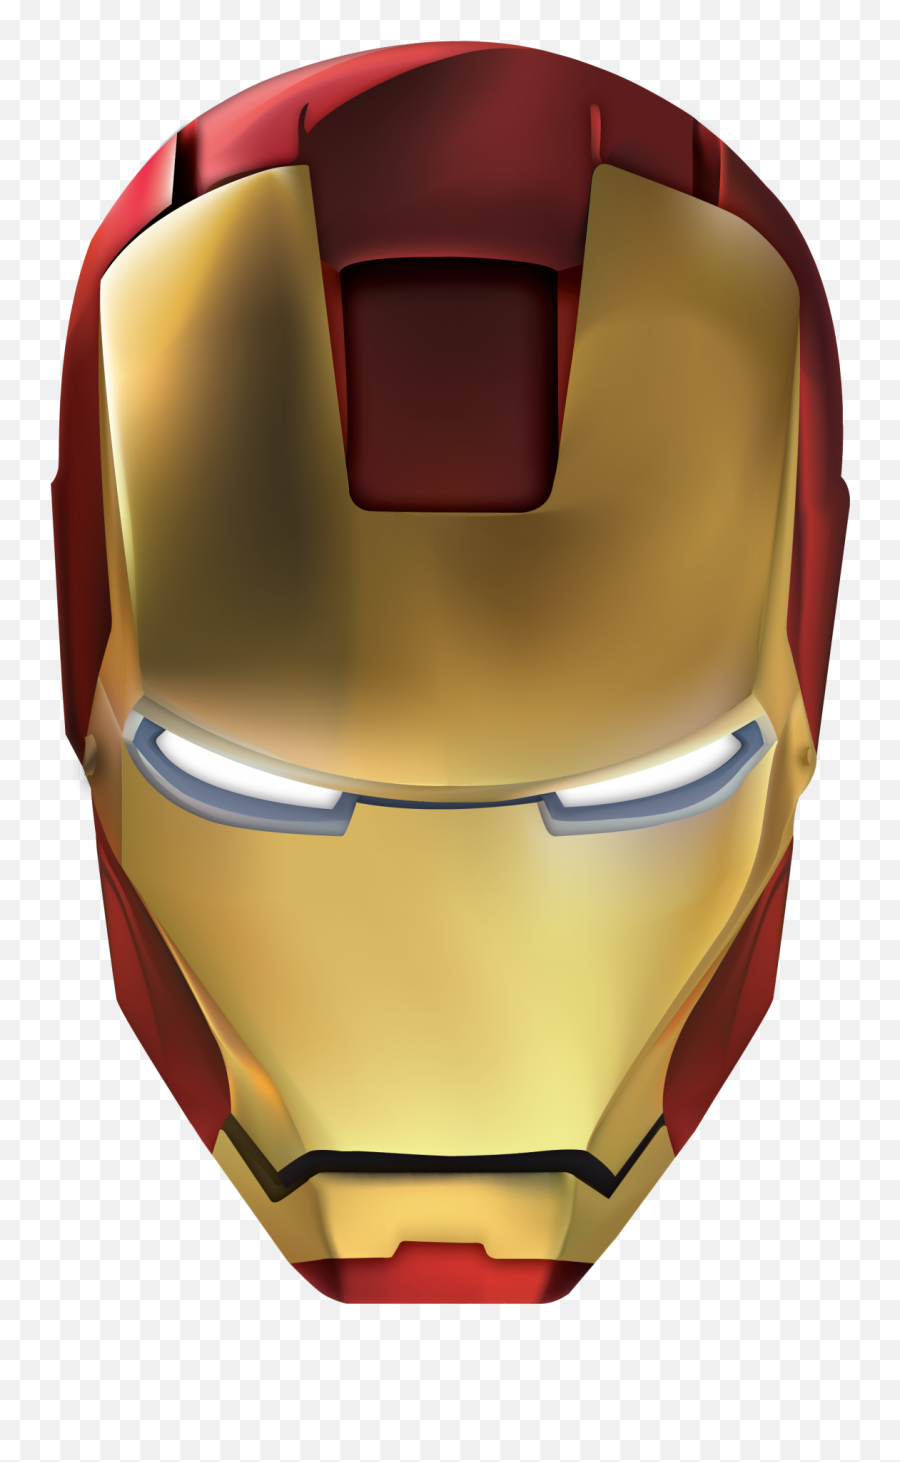 Iron Man Helmet Transparent Png - Iron Man Mask Png,Iron Man Helmet Png